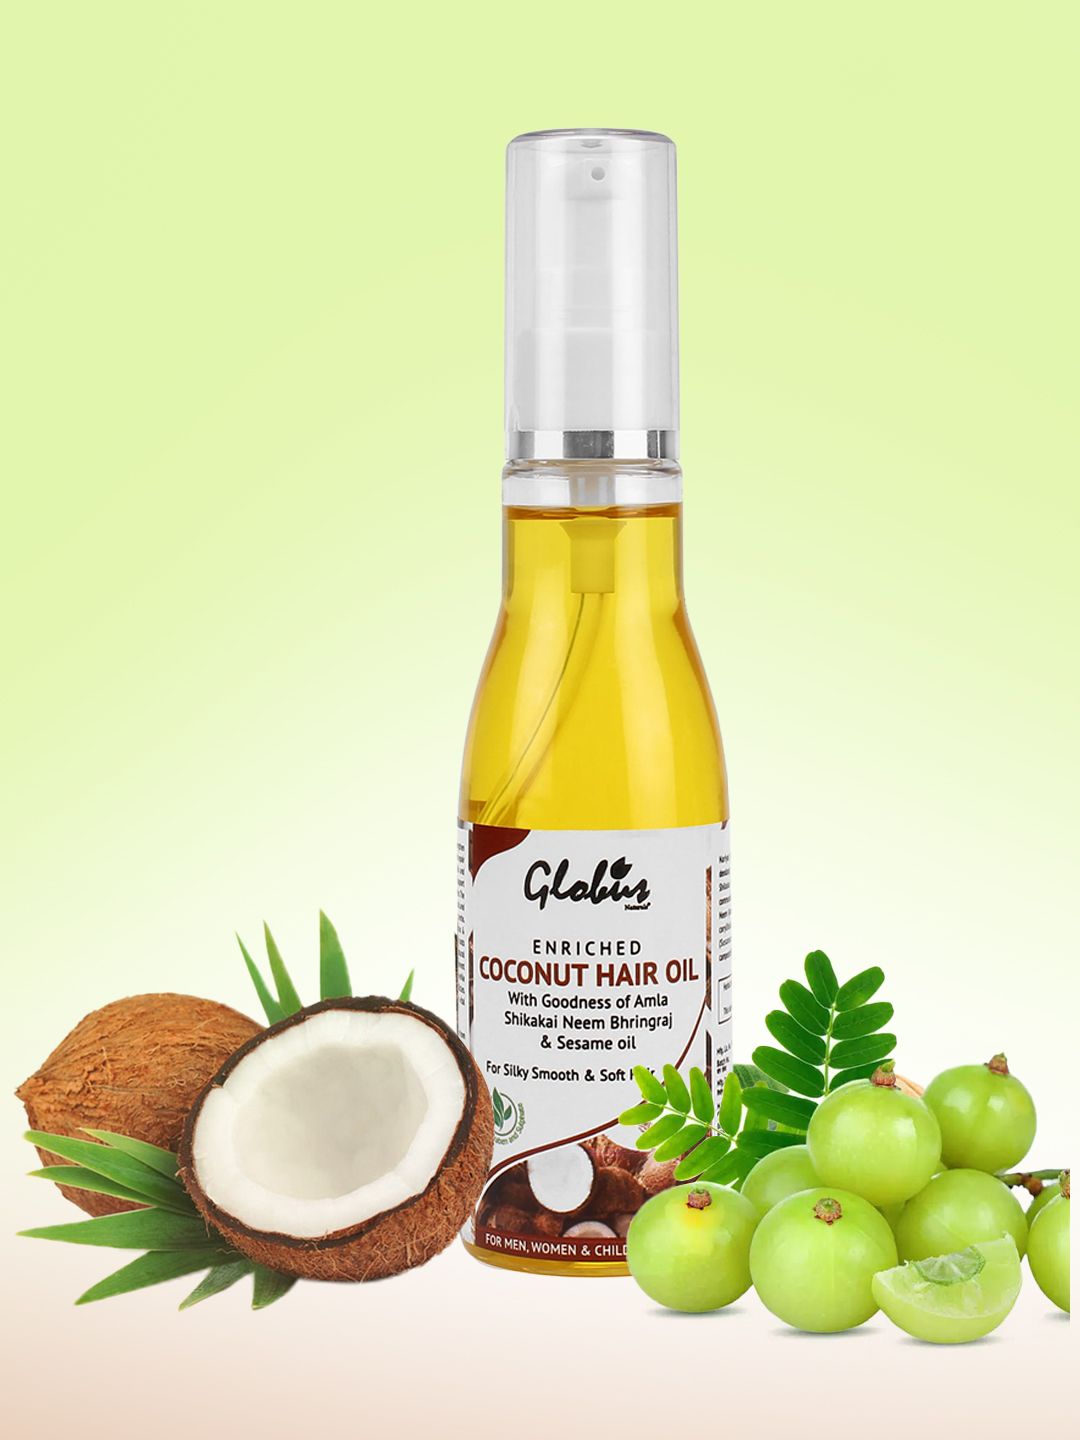 Globus Naturals Coconut Hair Oil - 100 ml Price in India